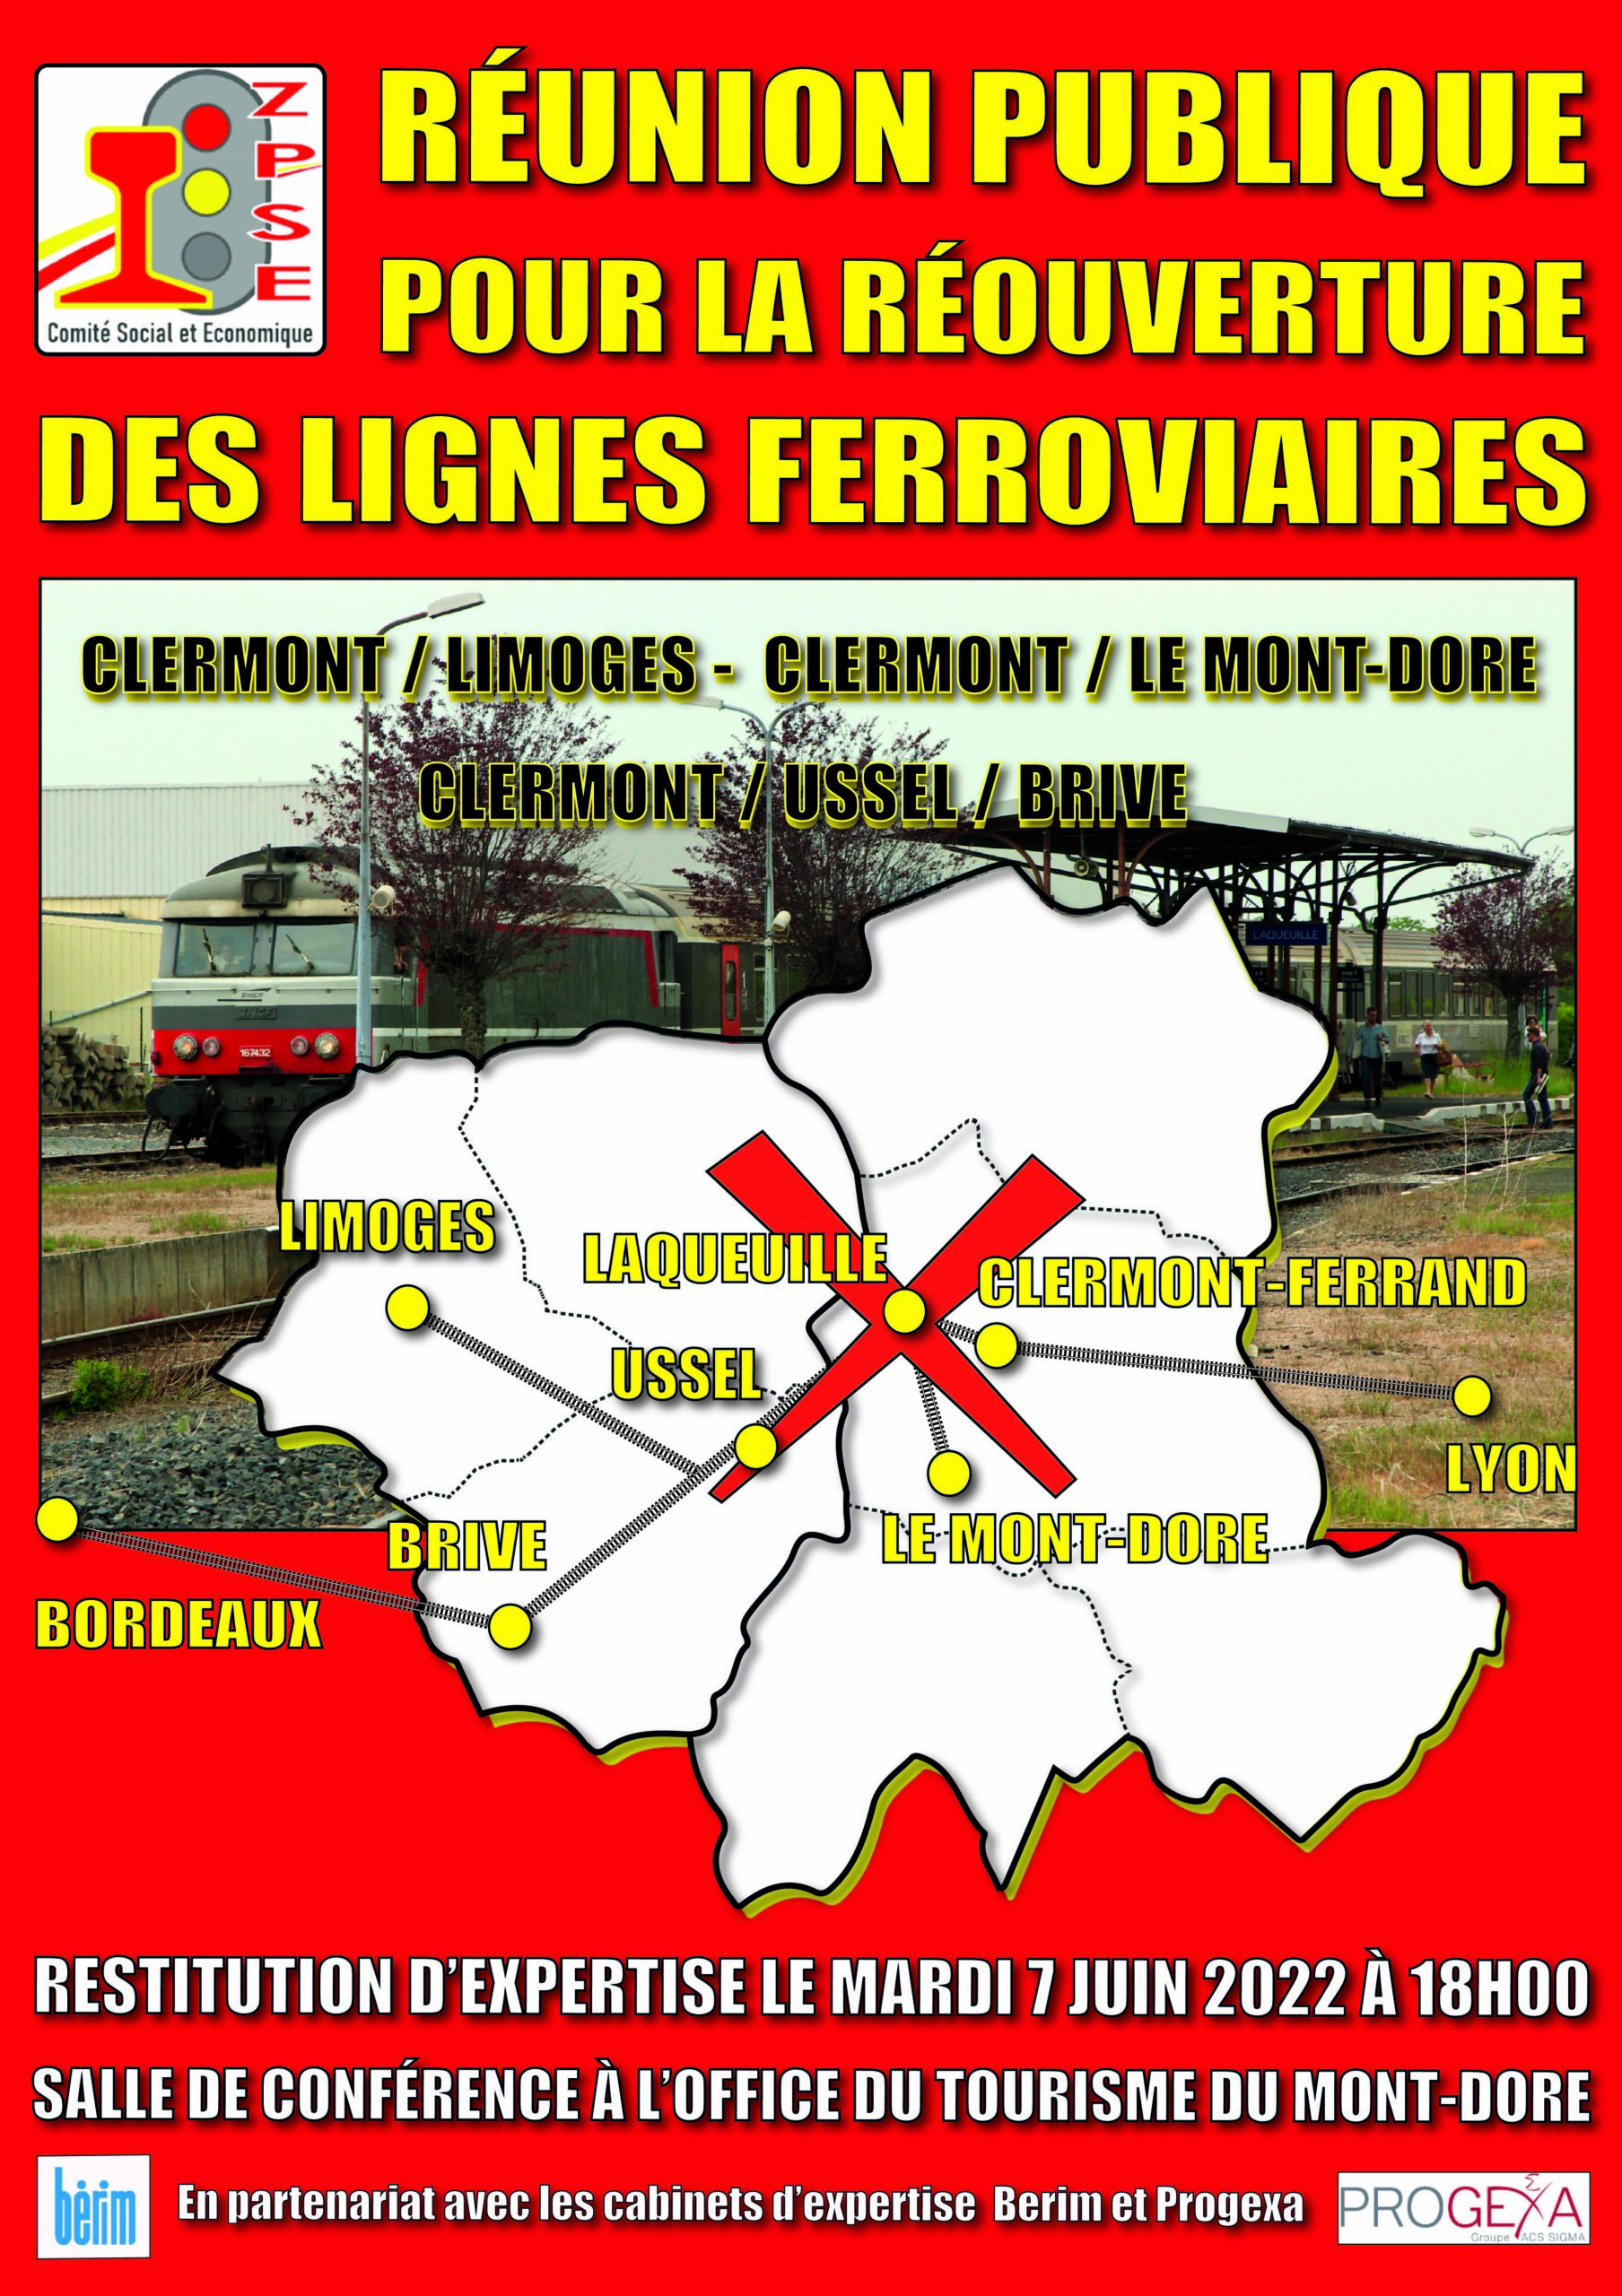 Le 7 juin 2022, réunion publique au Mont-Dore pour la réouverture des lignes ferroviaires du Massif Central